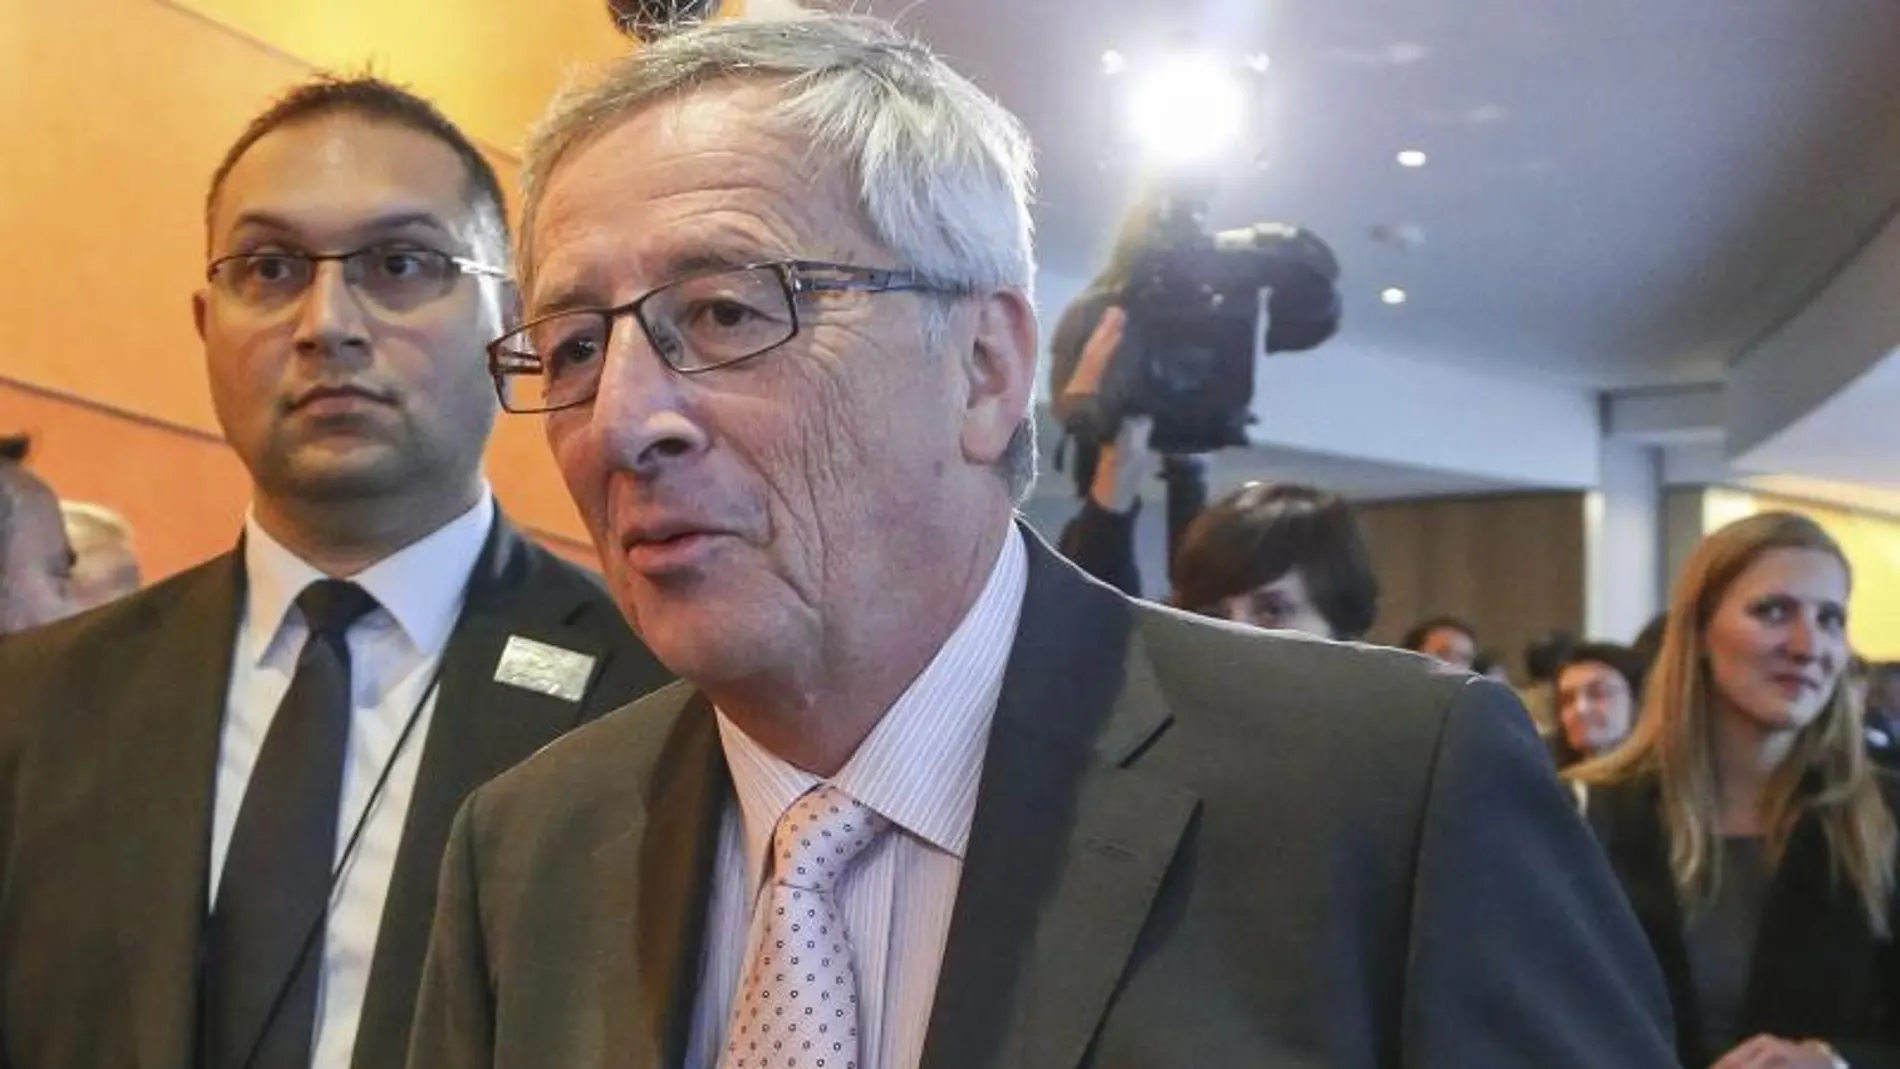 El luxemburgués Jean-Claude Juncker, propuesto por los líderes de la UE para presidir la Comisión Europea (CE), llega a una reunión del PPE en el Parlamento en Bruselas